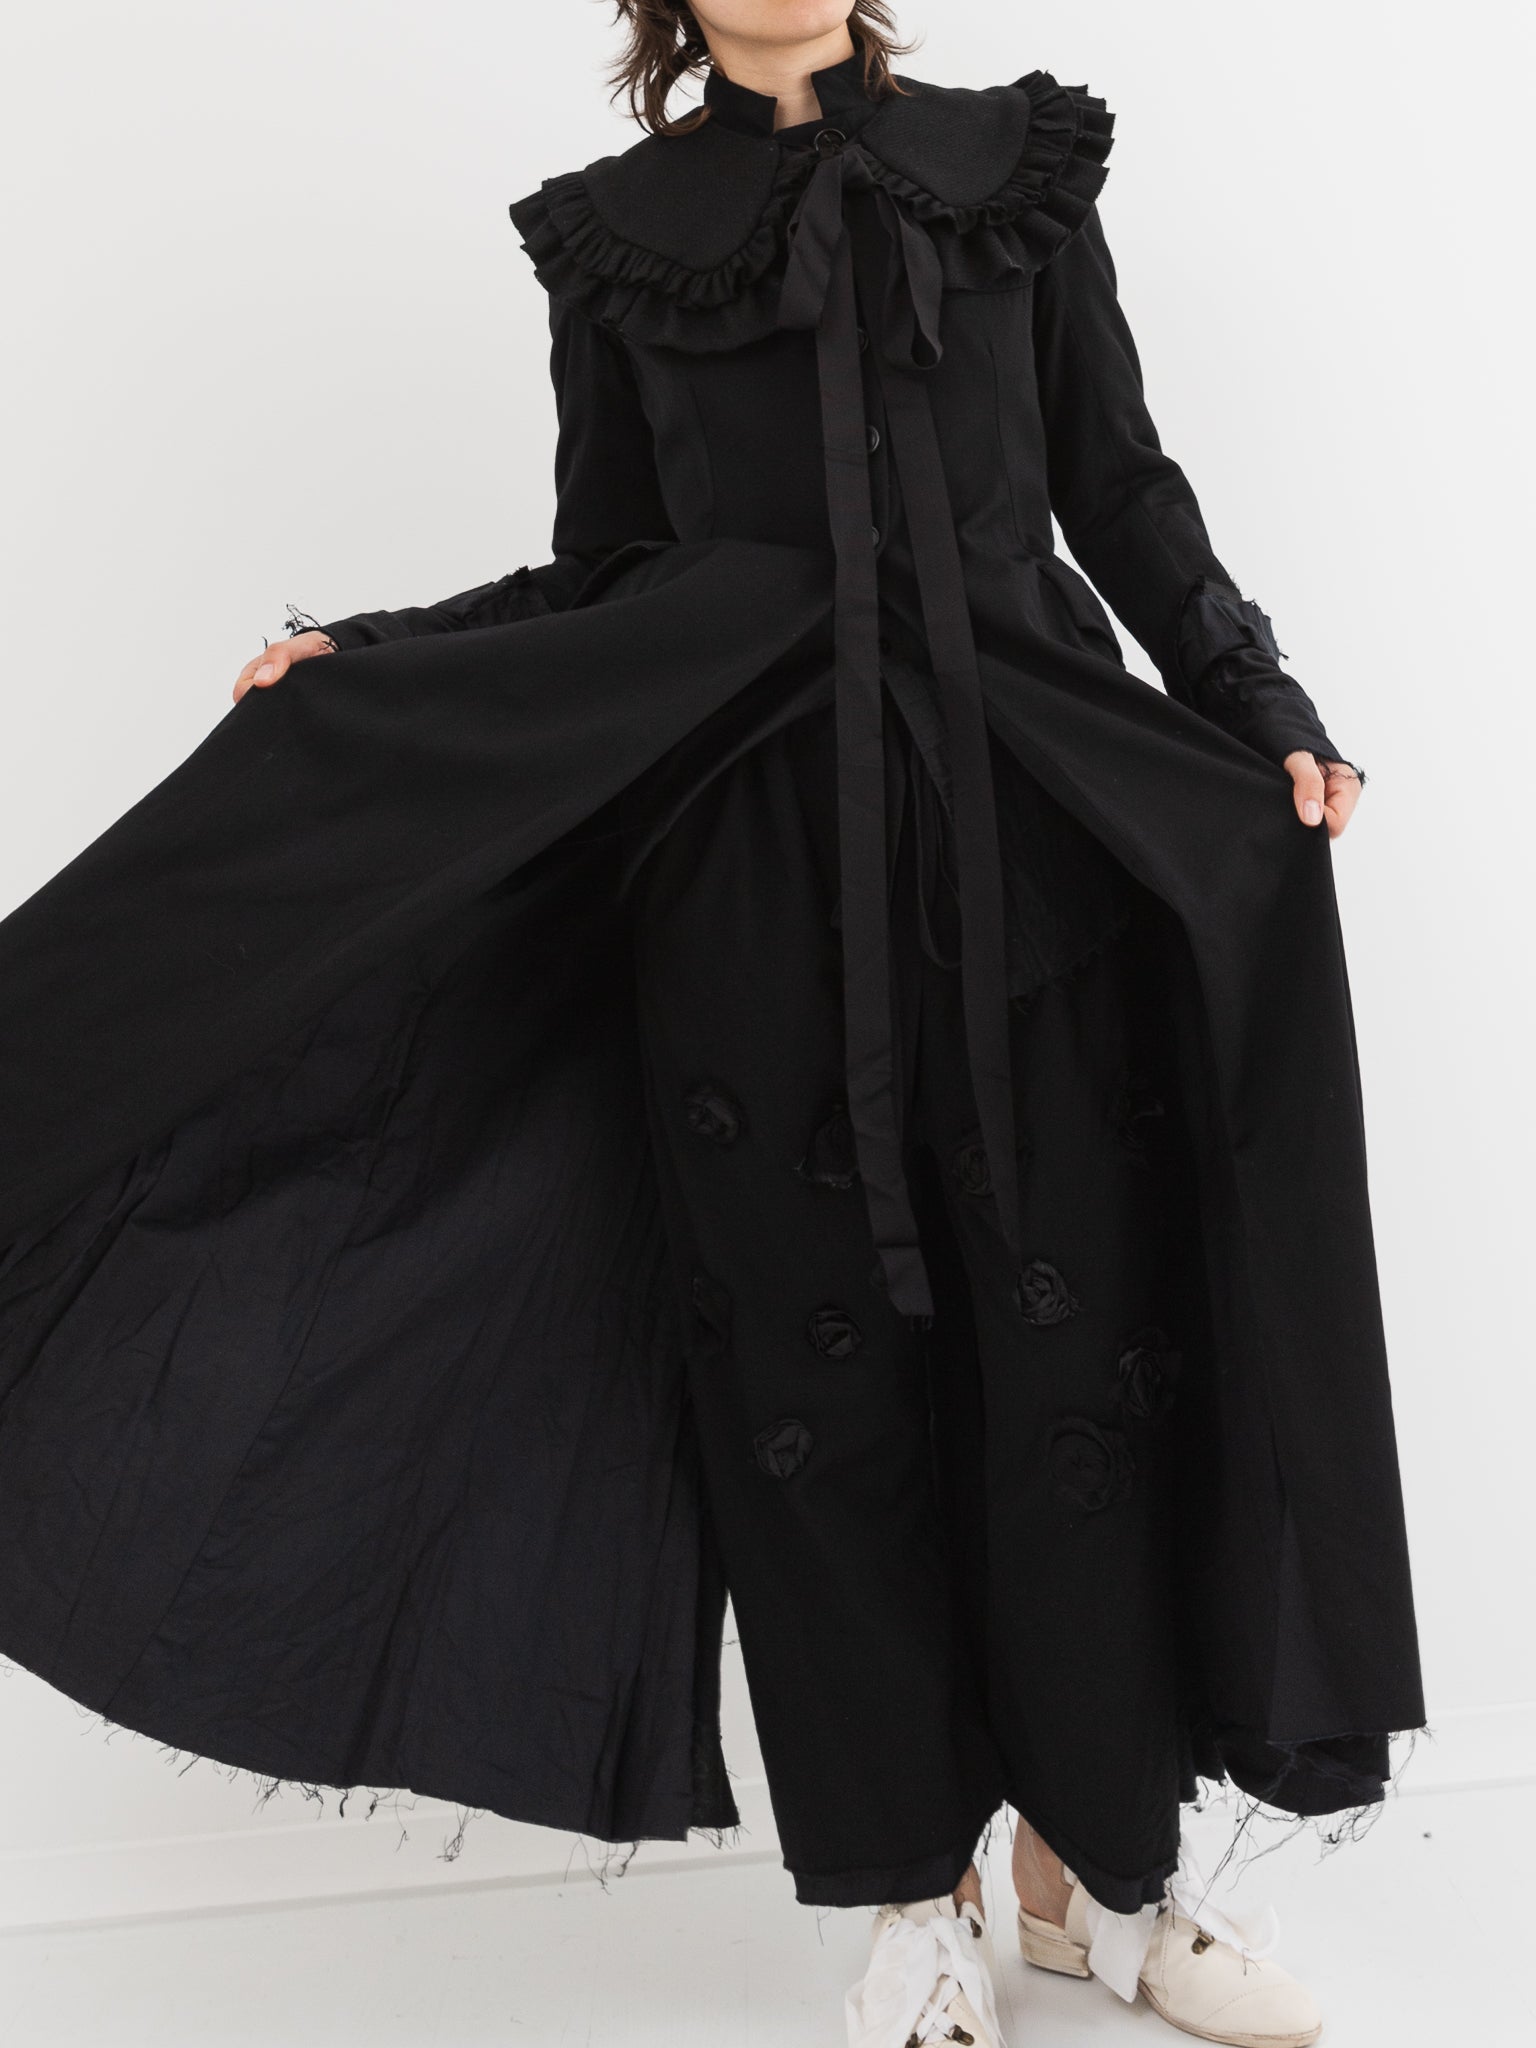 Elena Dawson Hacking Coat in Black - Worthwhile, Inc.